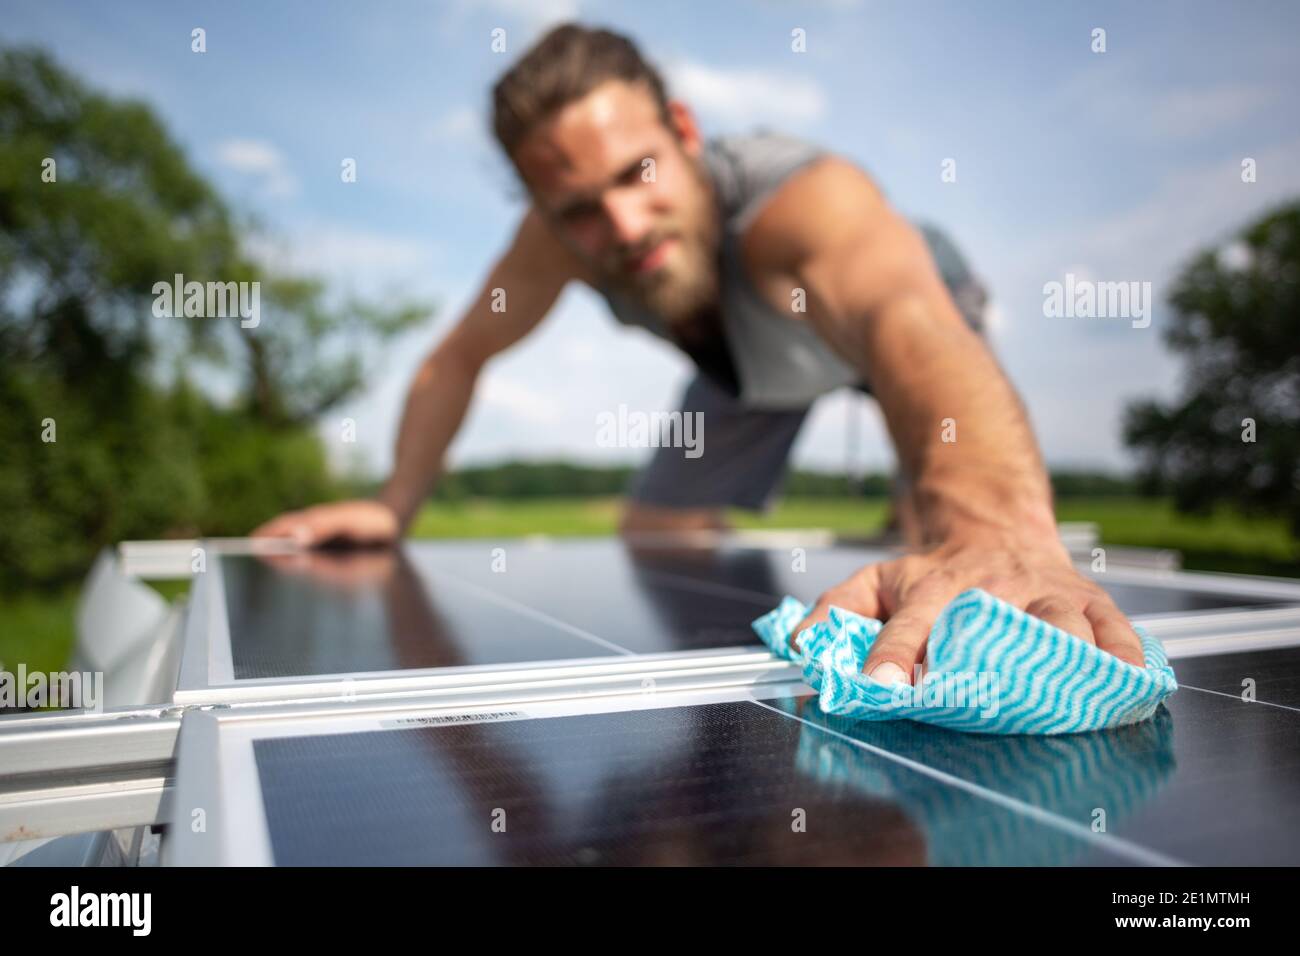 Hombre limpiando un panel solar en el techo de un caravana Foto de stock